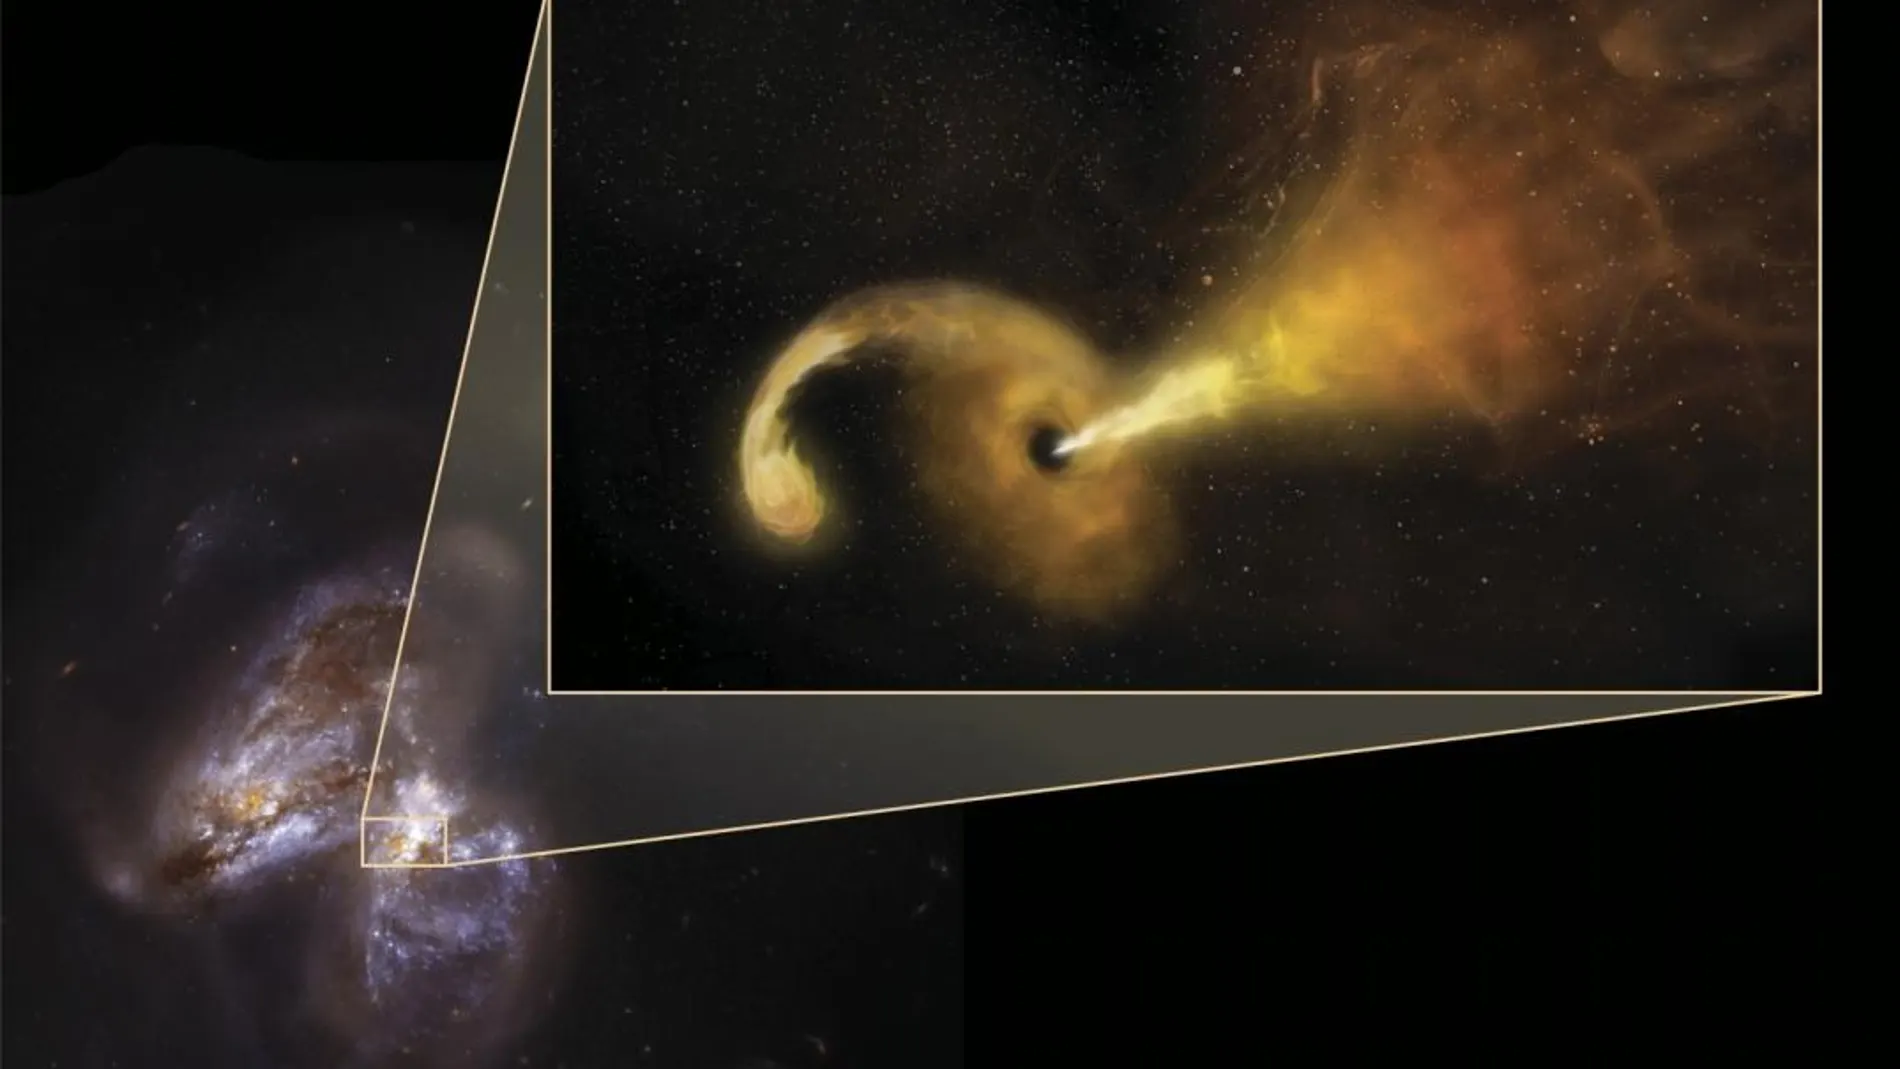 La galaxia Arp 299-B y una recreación artísticadela erupción producida por un agujero negro al desgarrar una estrella./ESA/NASA/Sophia Dagnello, NRAO/AUI/NSF